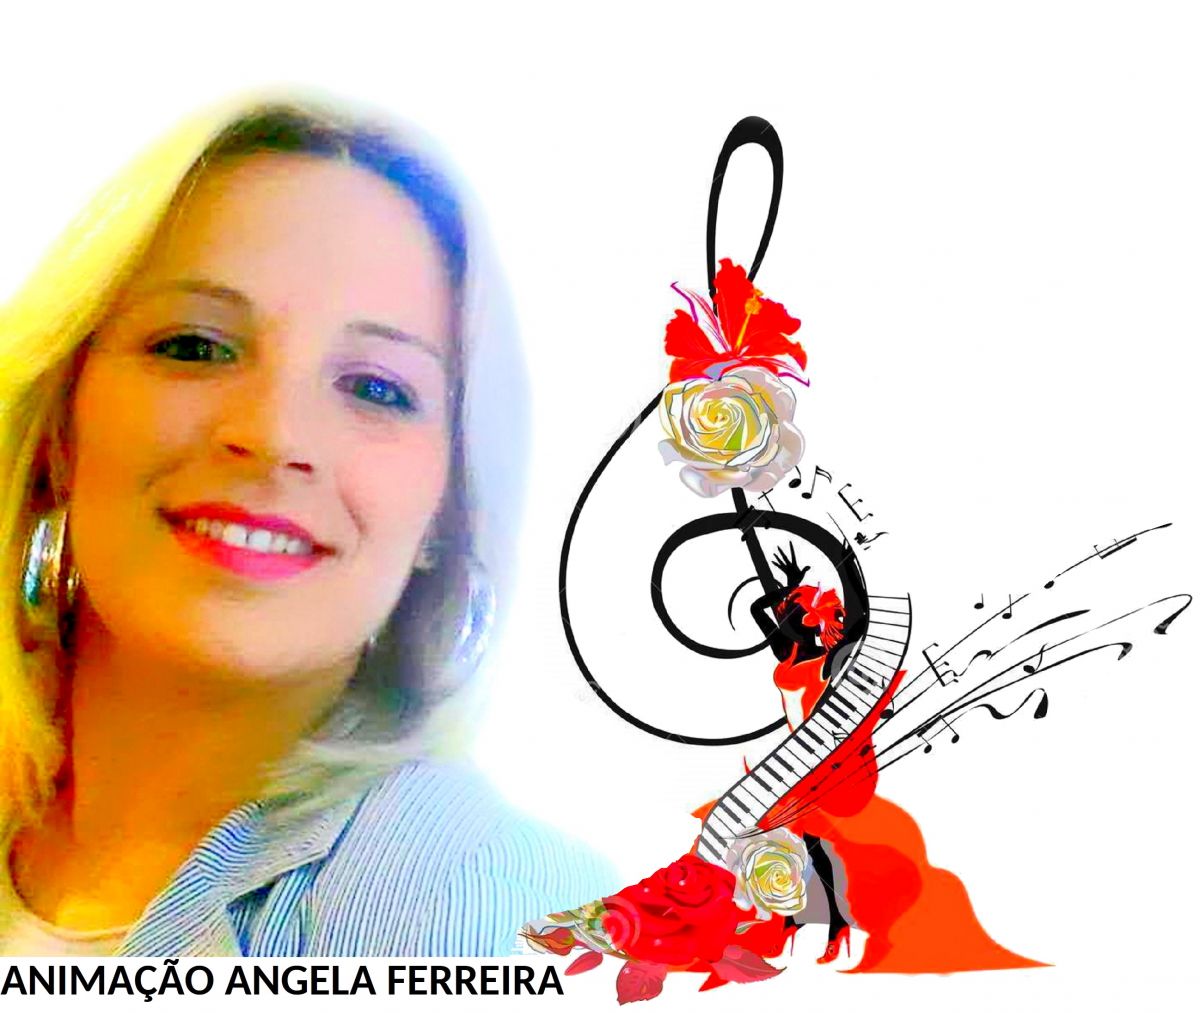 ANGELA FERREIRA / DJ RUY LEÃO - Braga - Animação com Cantores